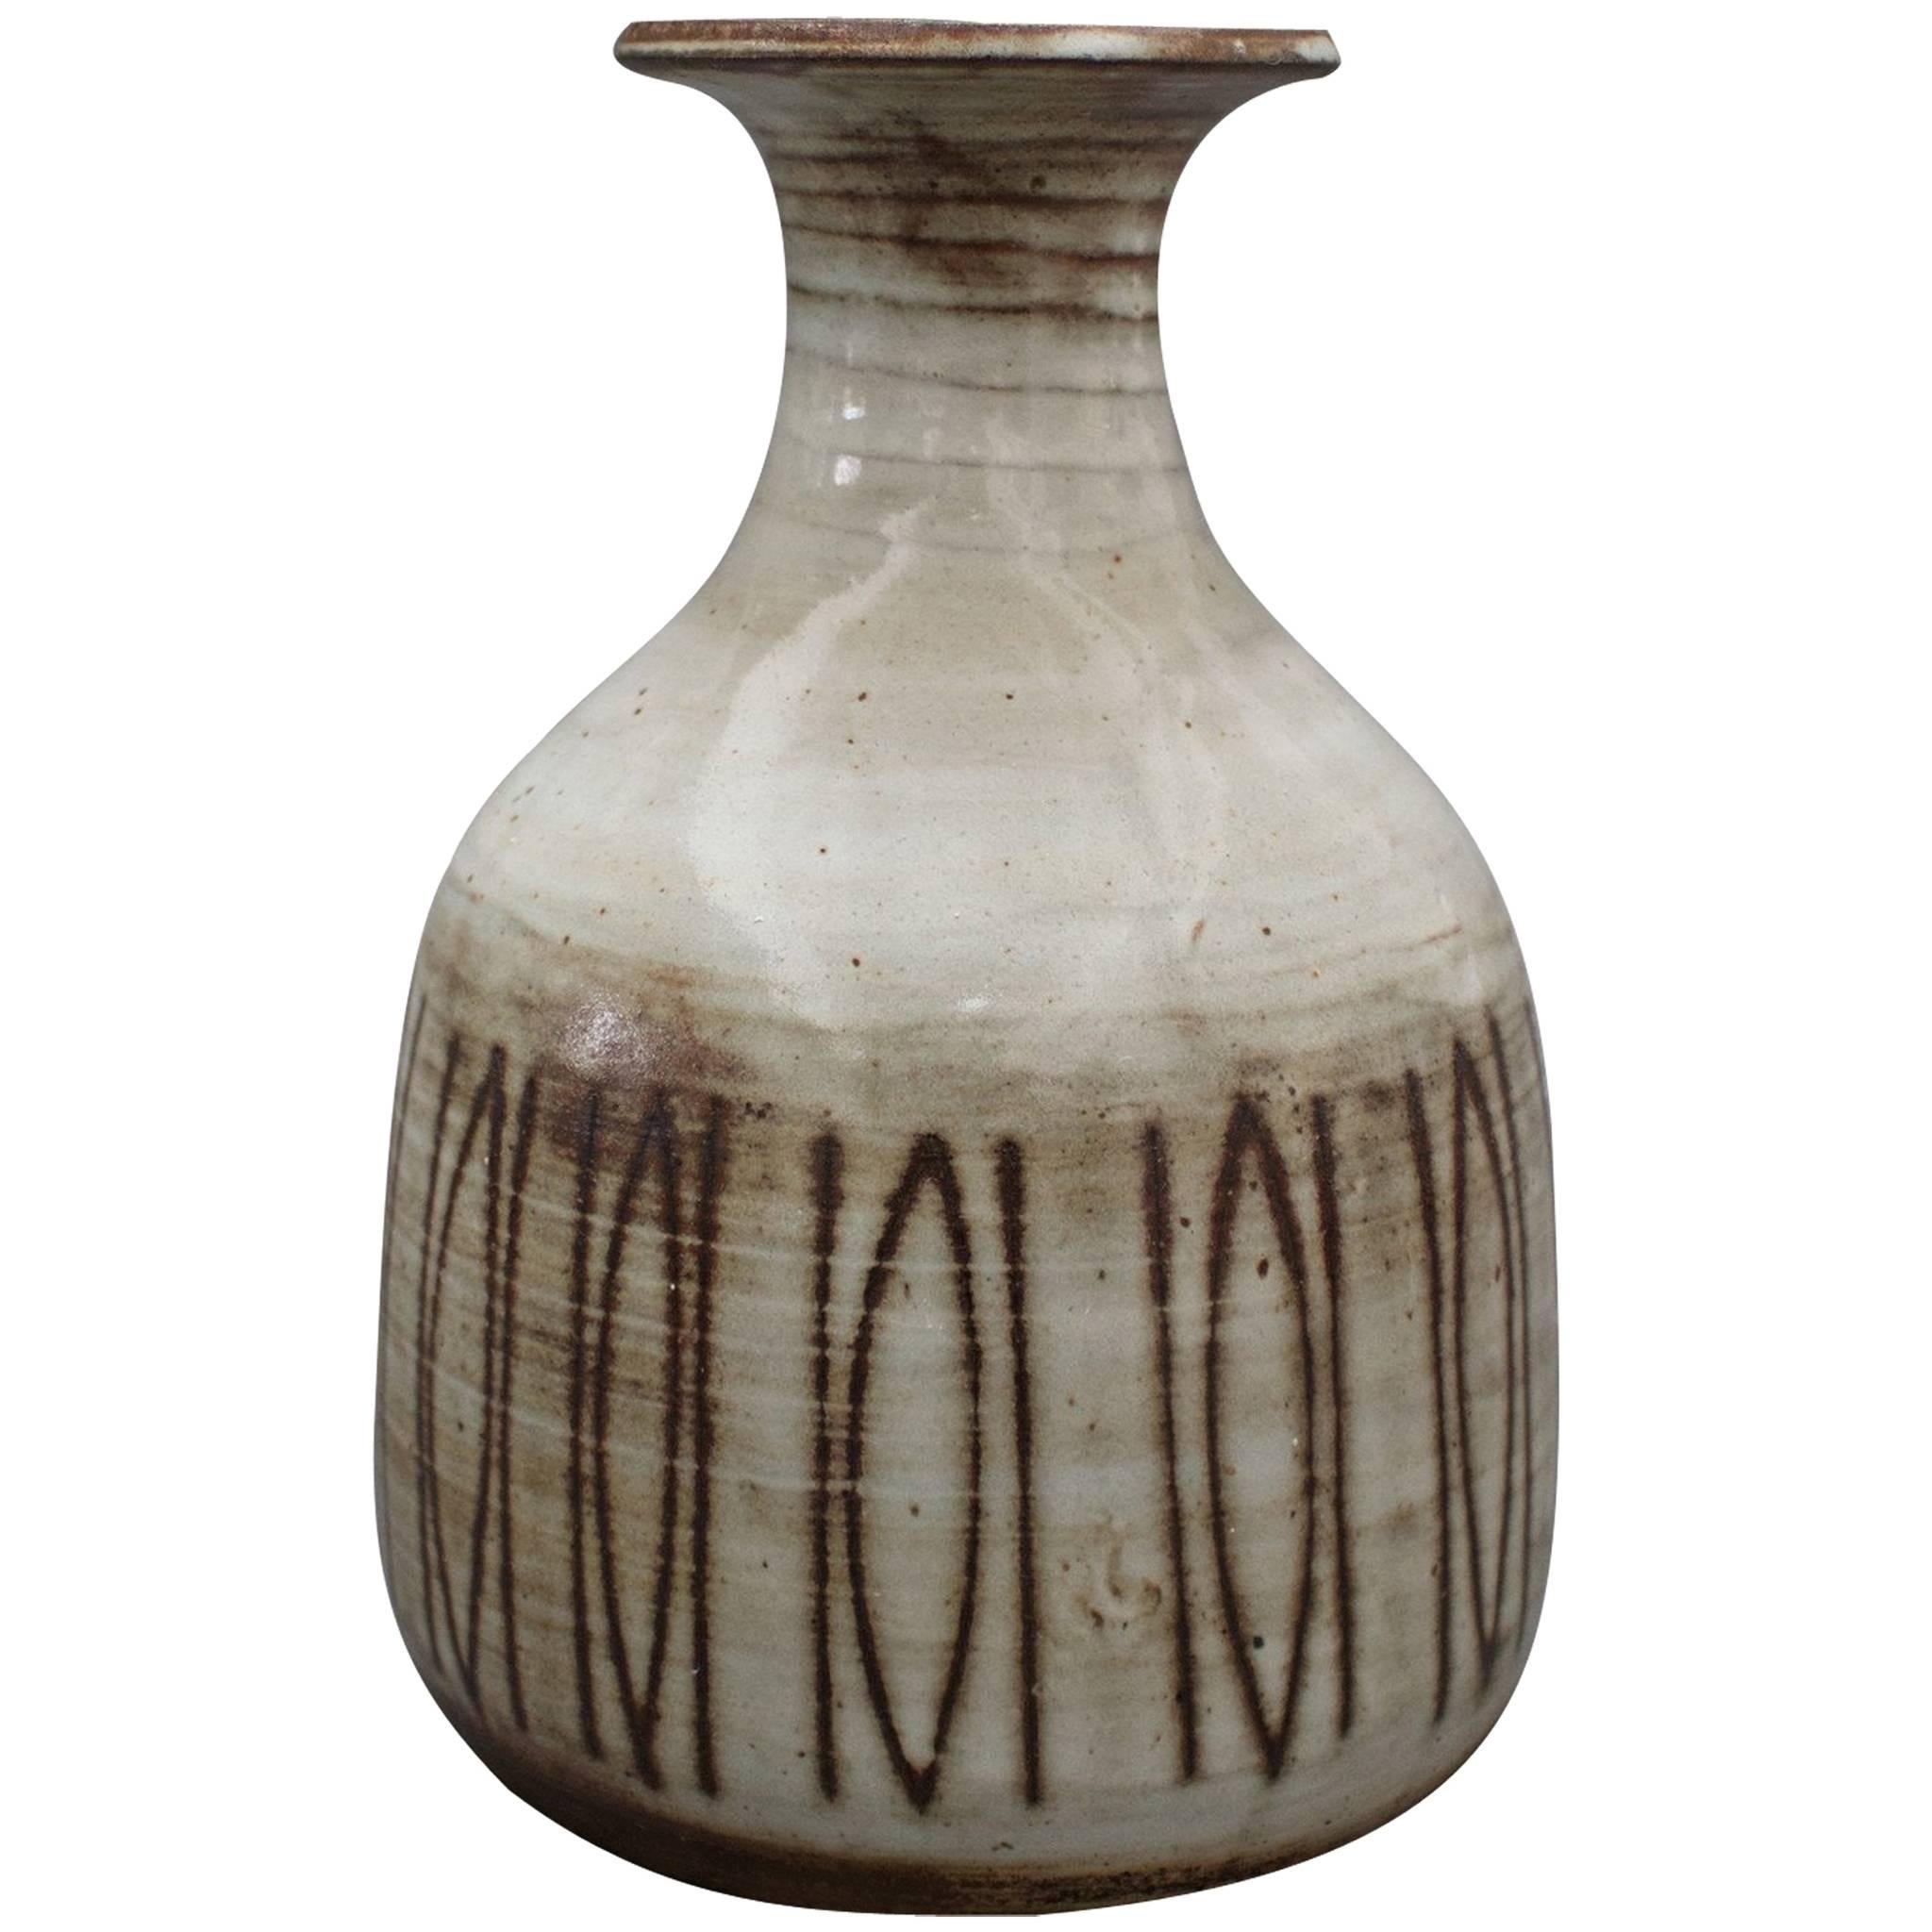 Midcentury Ceramic Vase by Jacques Pouchain, Dieulefit, France, circa 1960s